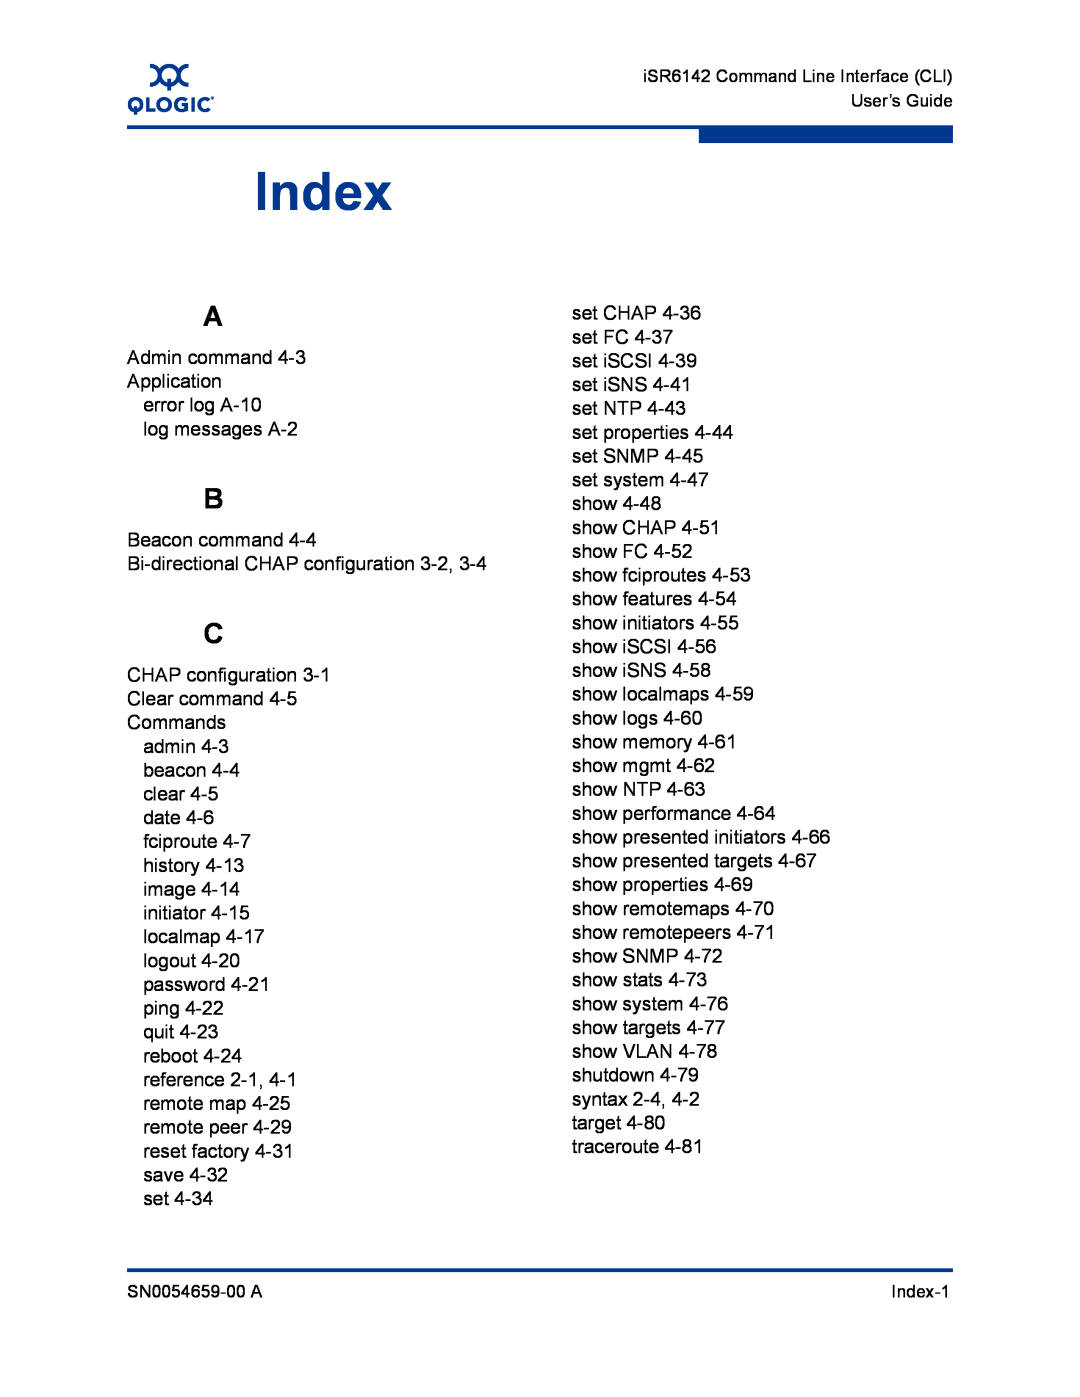 Q-Logic ISR6142 manual Index 